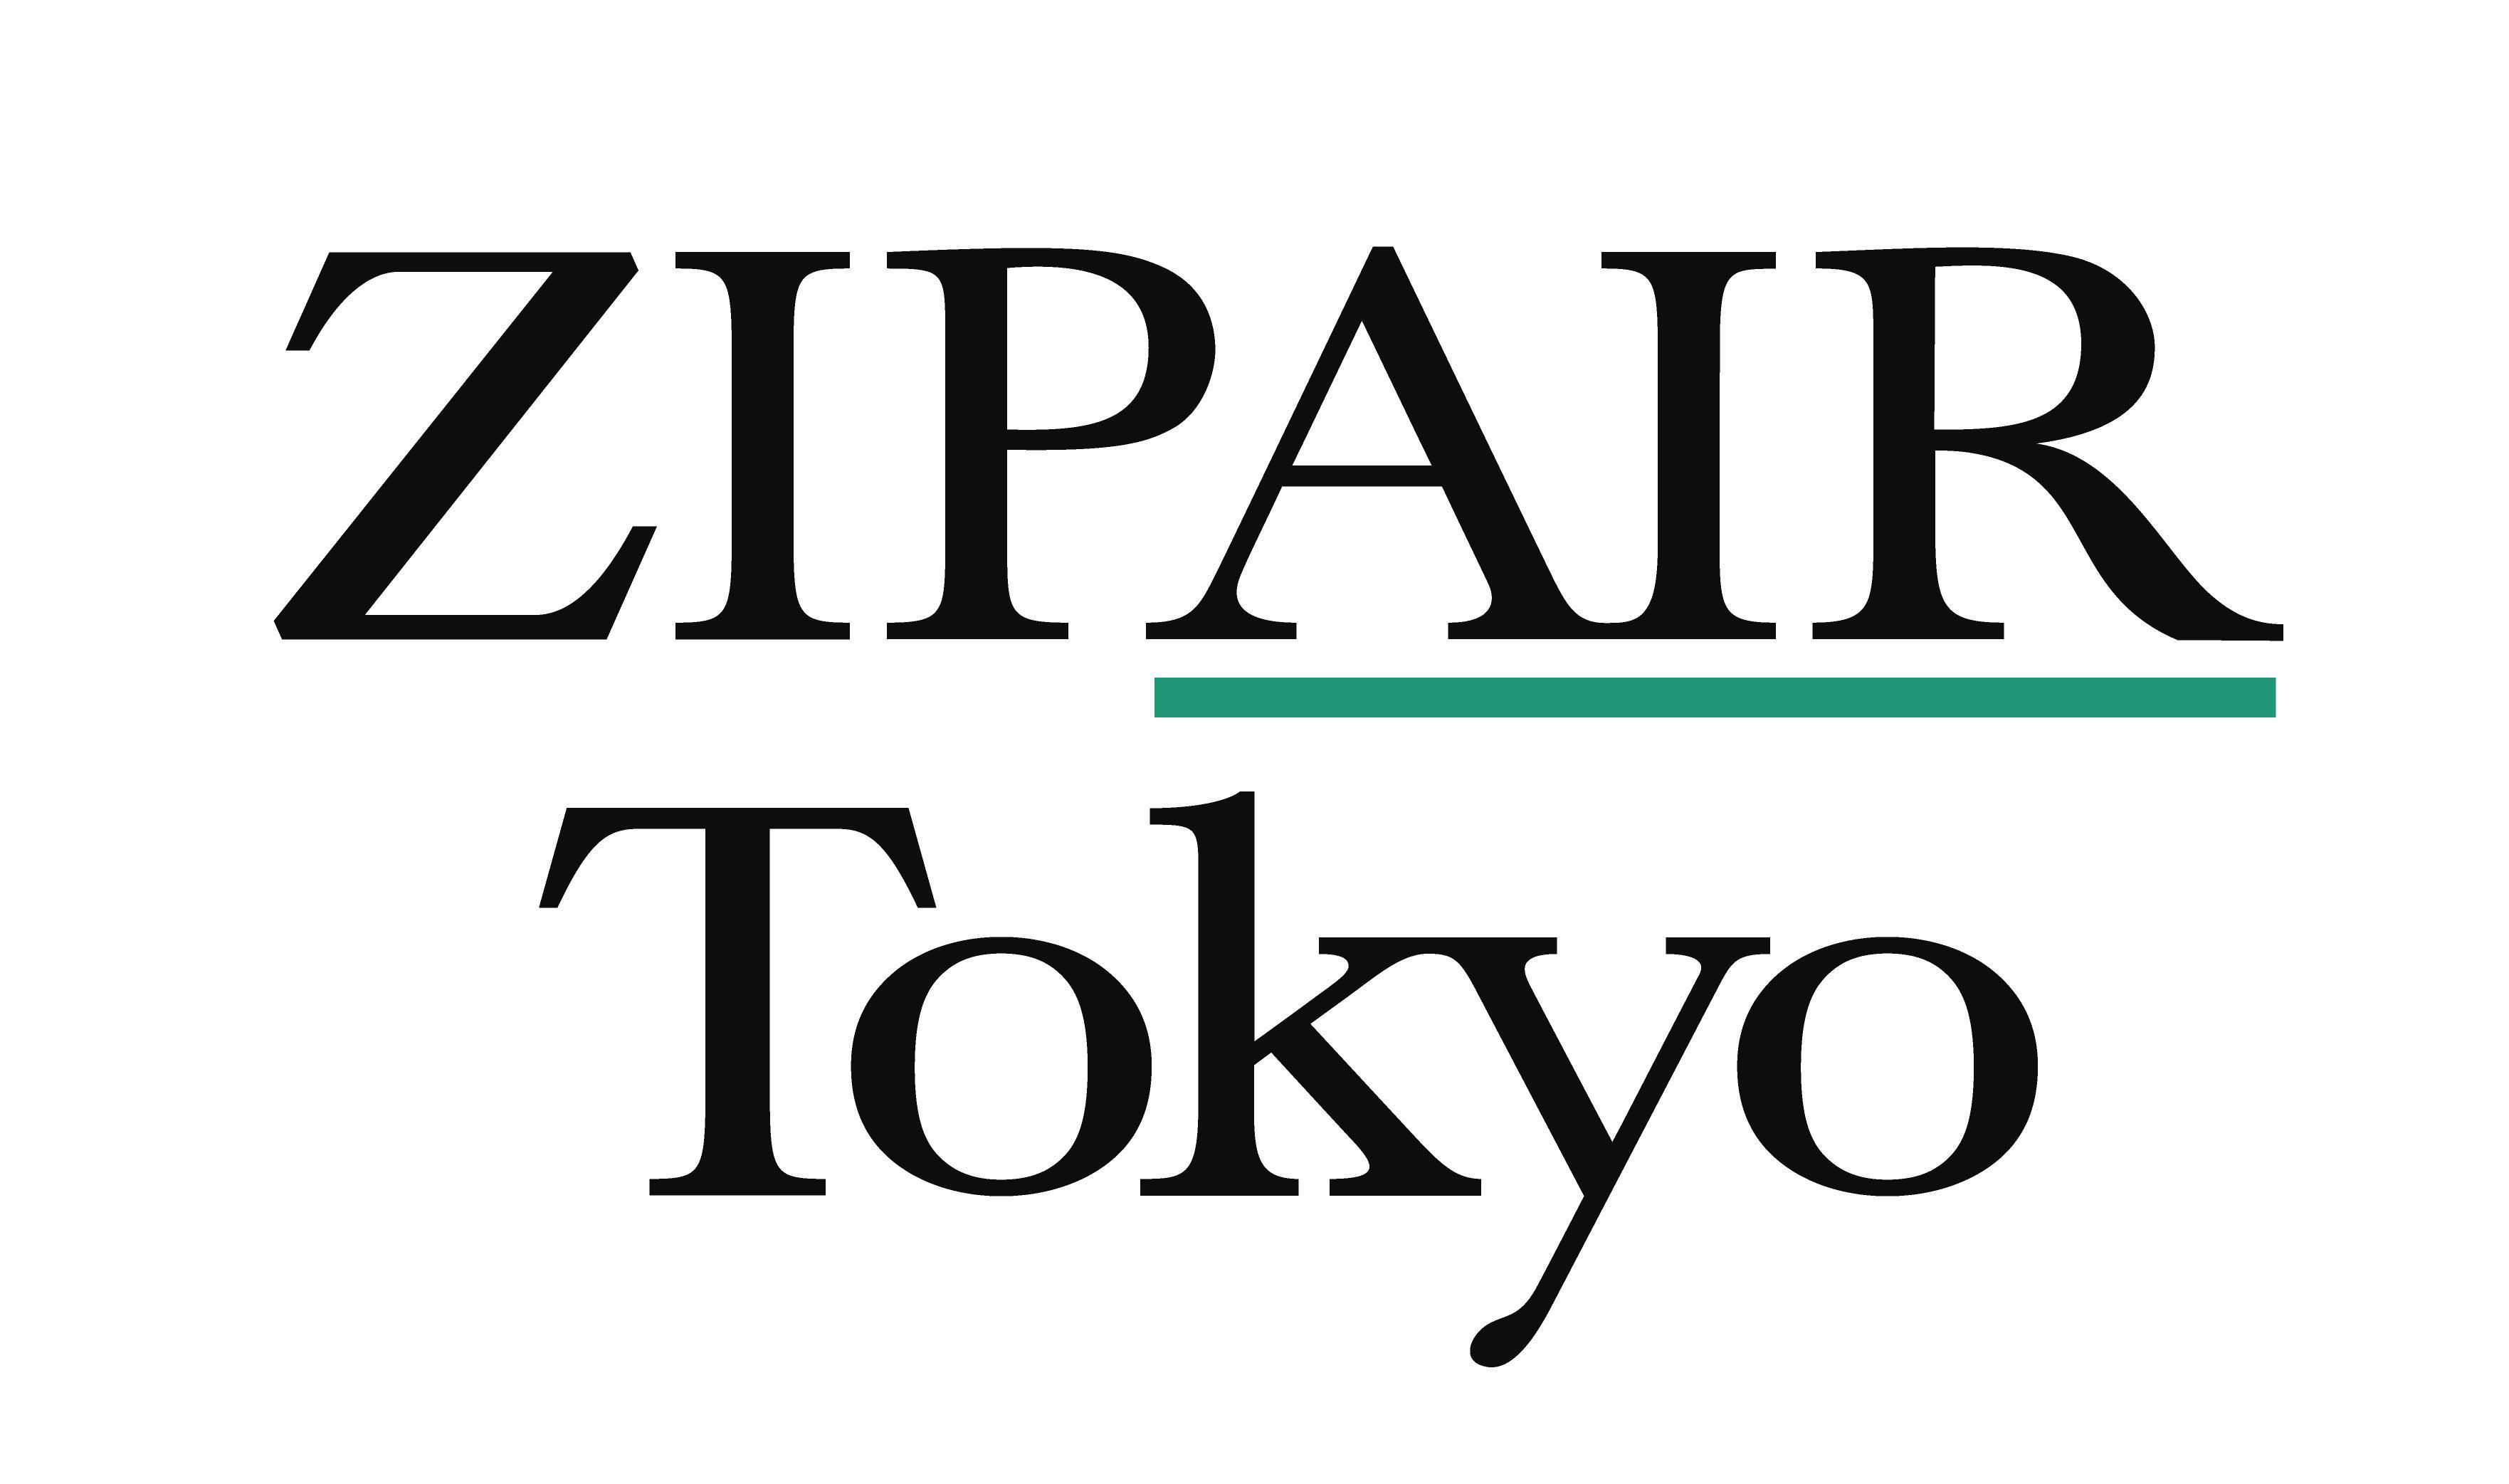 La low-cost long-courrier de JAL s’appellera Zipair Tokyo